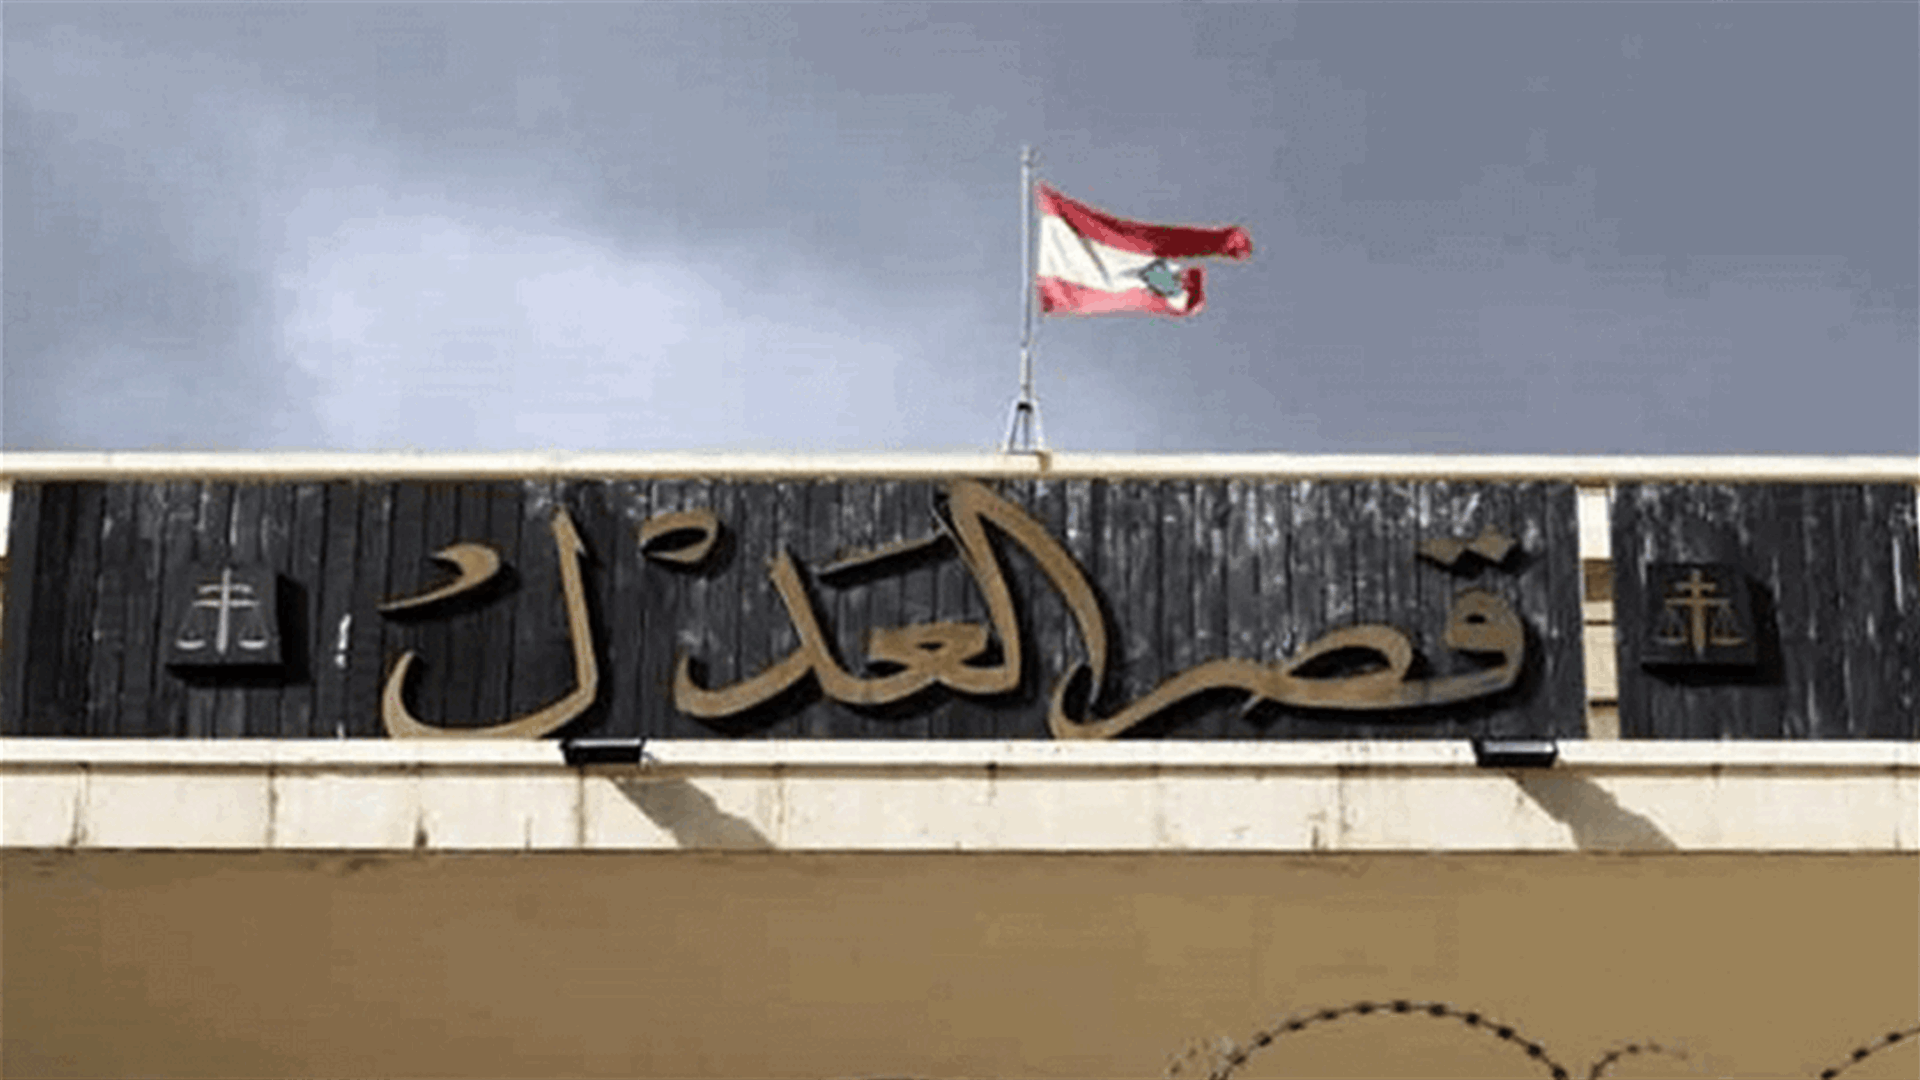 ما صحة ما انتشر عن سقوط أحد المصاعد في قصر عدل بيروت ووقوع جرحى؟